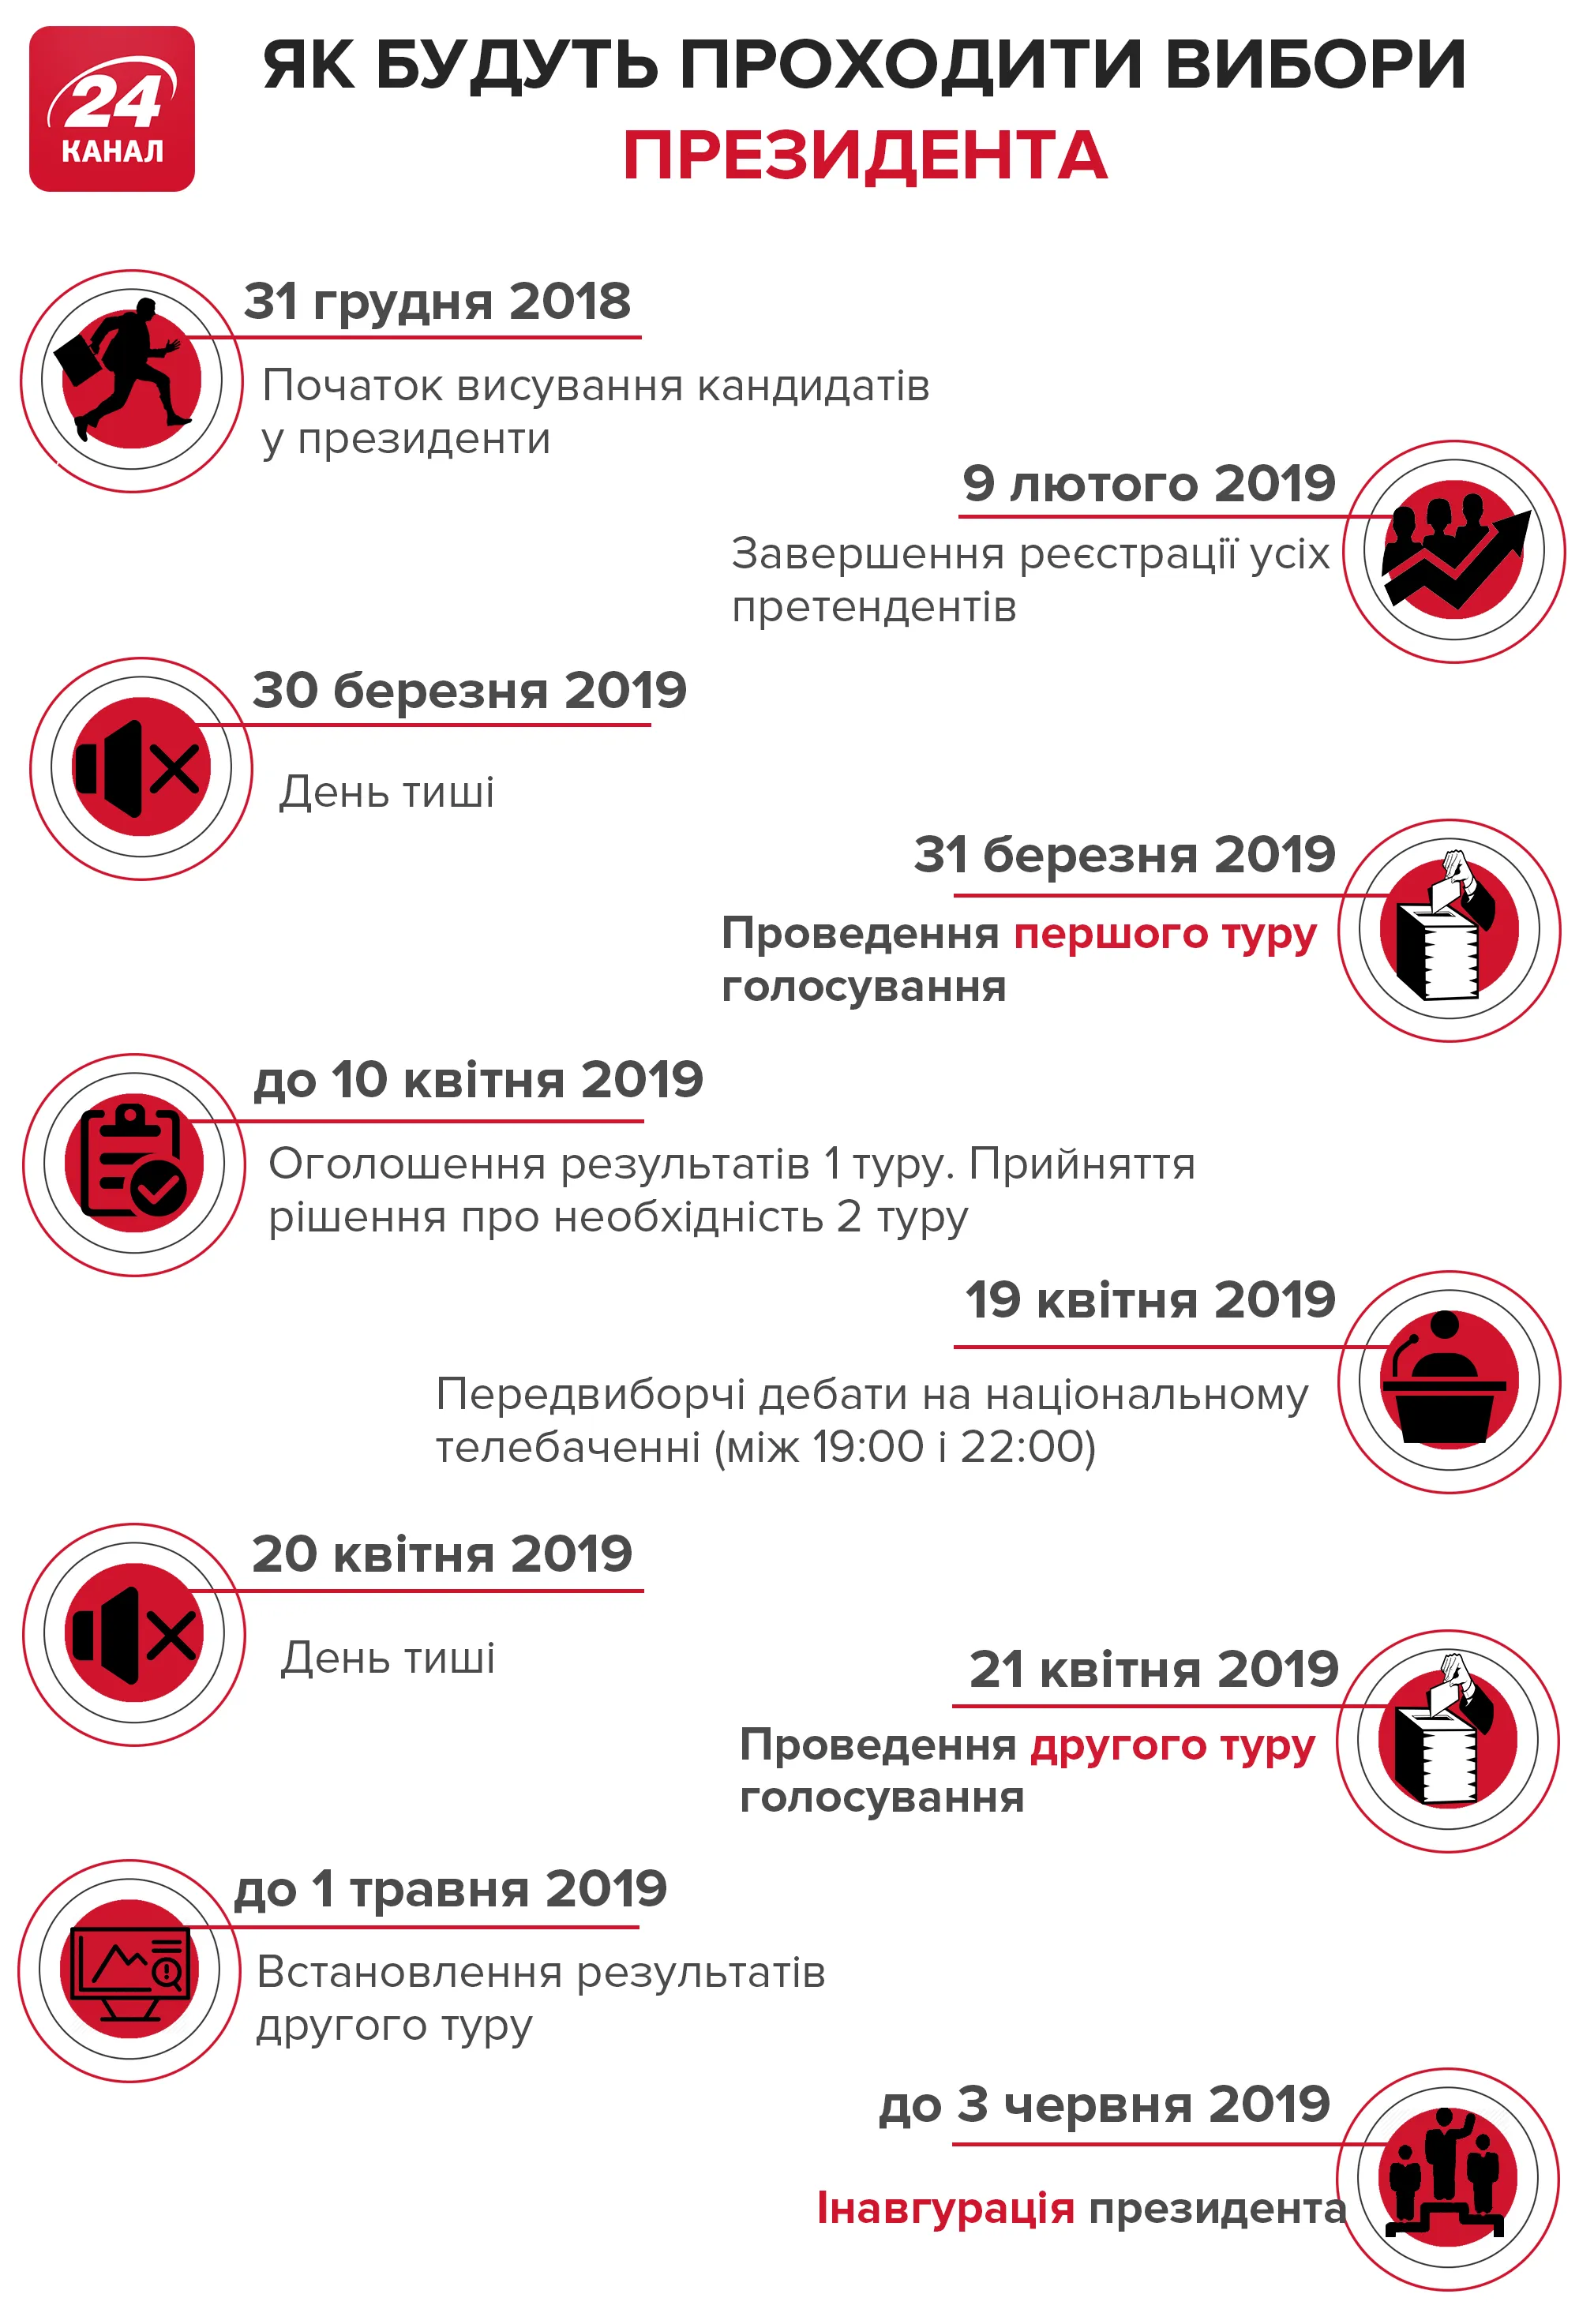 президентські вибори 2019 головні дати 